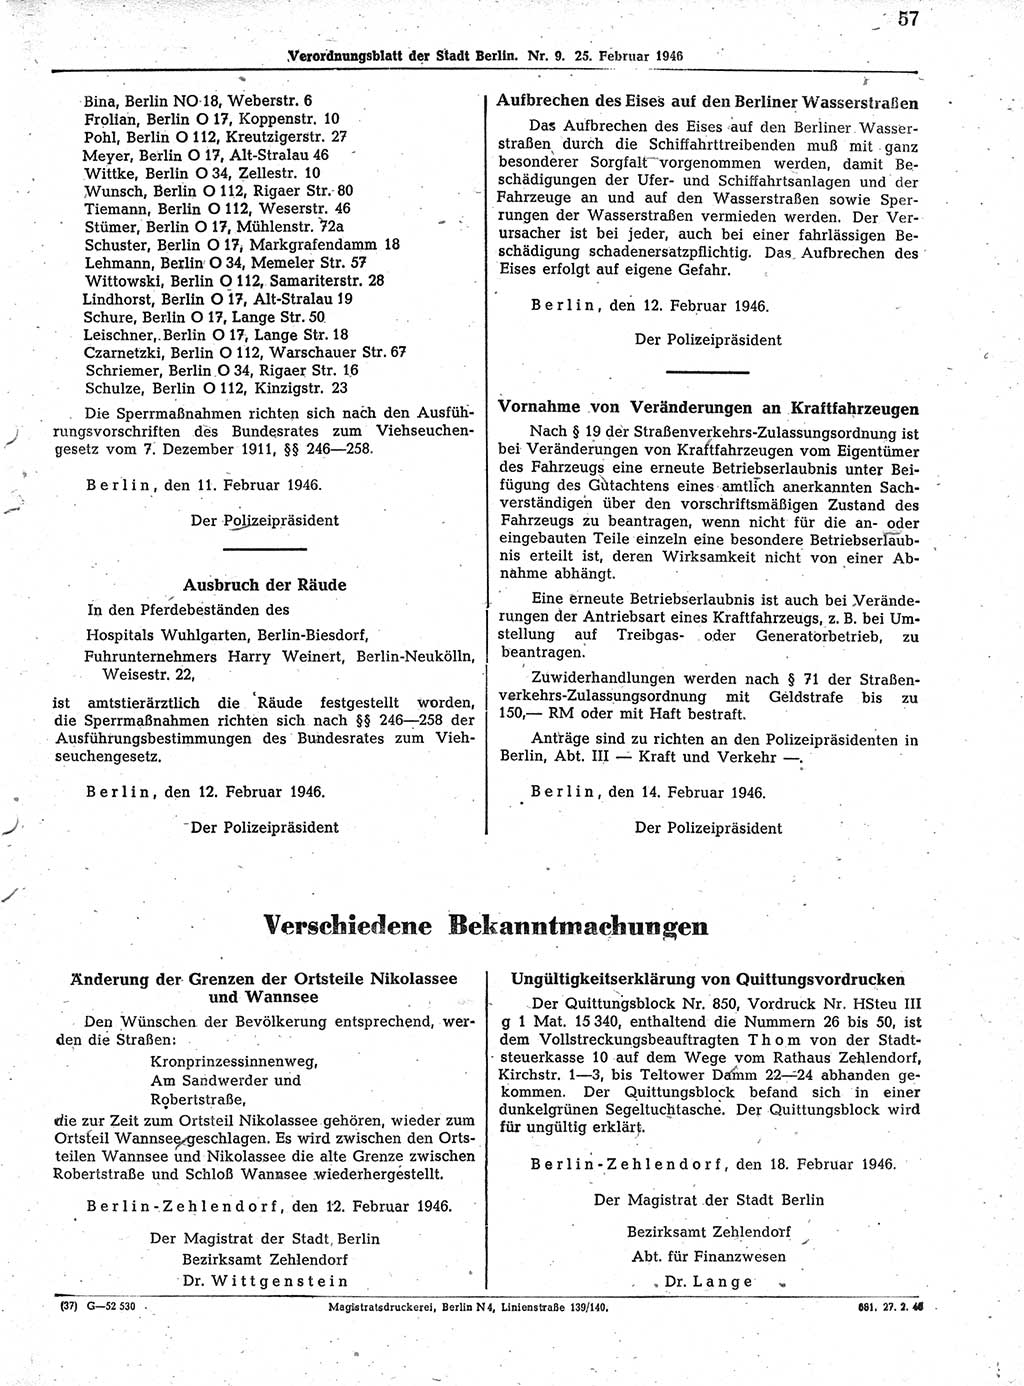 Verordnungsblatt (VOBl.) der Stadt Berlin, für Groß-Berlin 1946, Seite 57 (VOBl. Bln. 1946, S. 57)